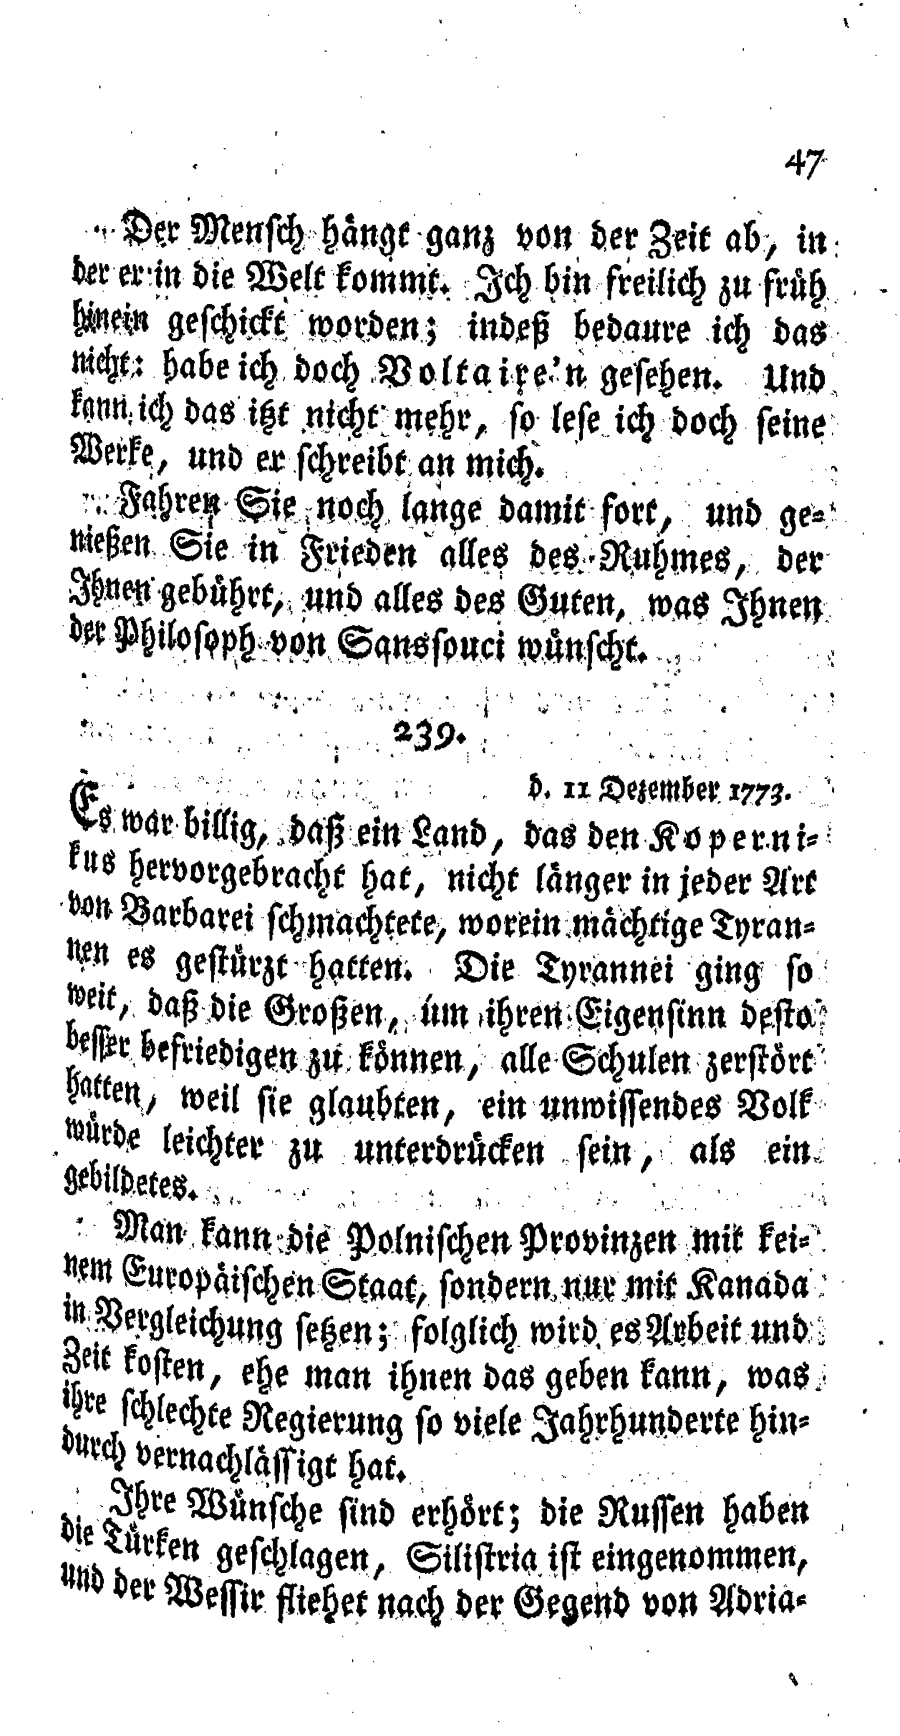 S. 47, Obj. 2